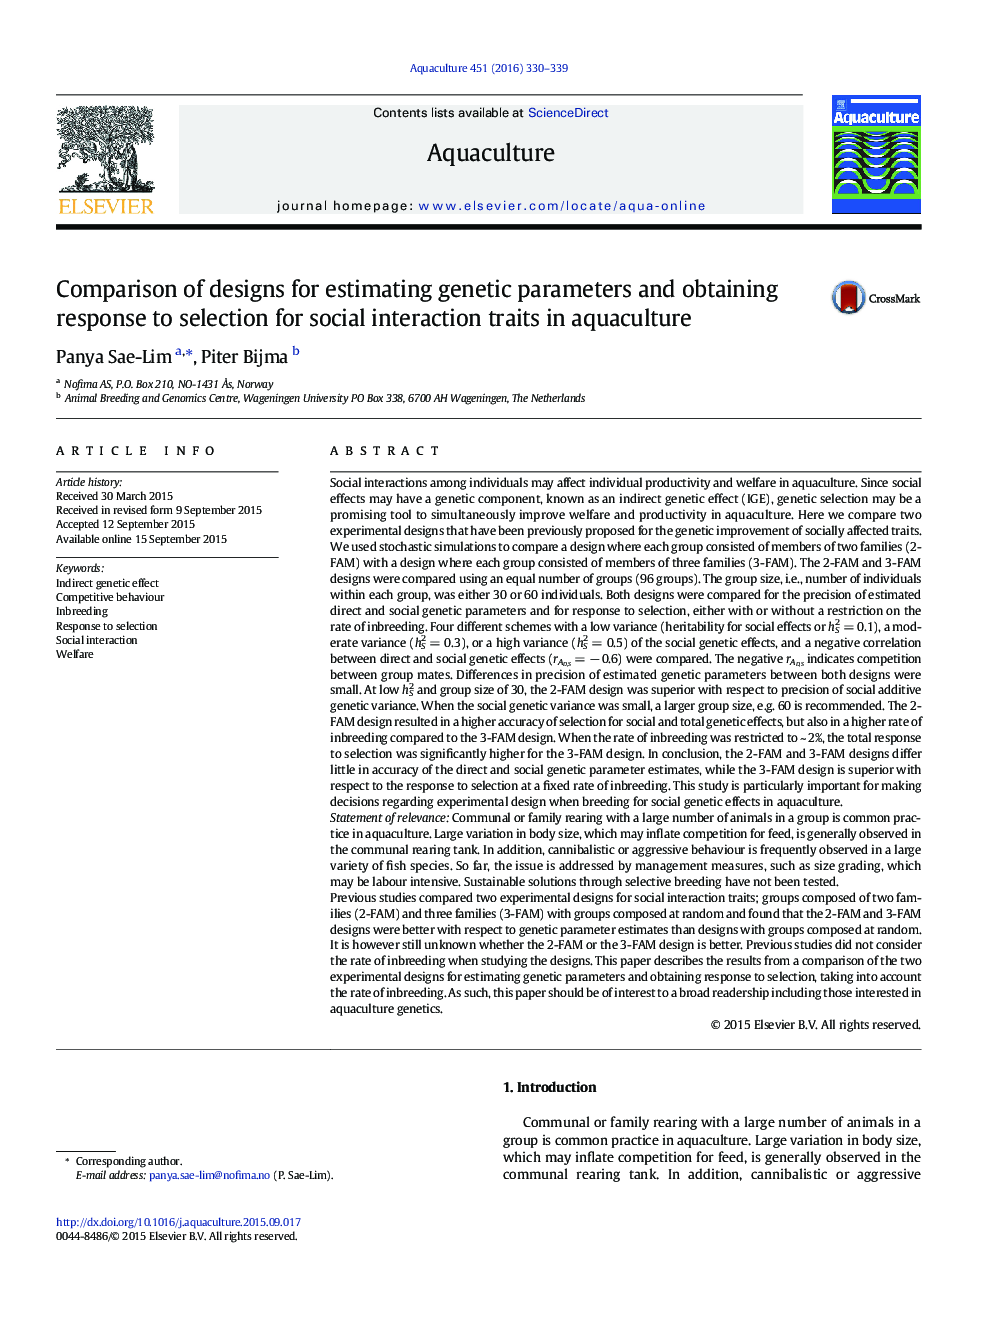 مقایسه طرح ها برای برآورد پارامترهای ژنتیکی و دریافت پاسخ به انتخاب ویژگی های تعامل اجتماعی در حوزه آبزیان 